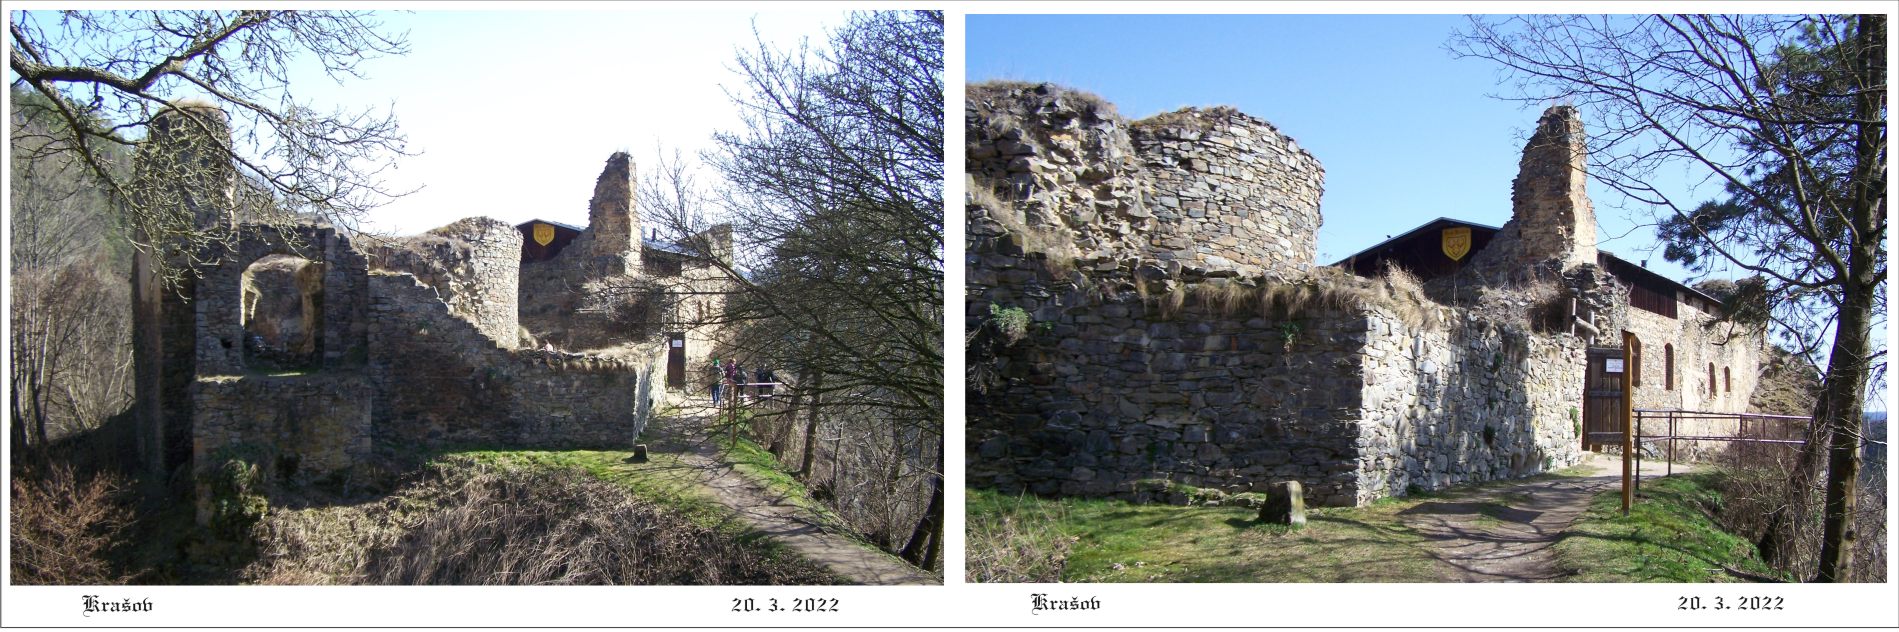 Krašov - zřícenina hradu bez své hlavní chlouby bergfritové věže.